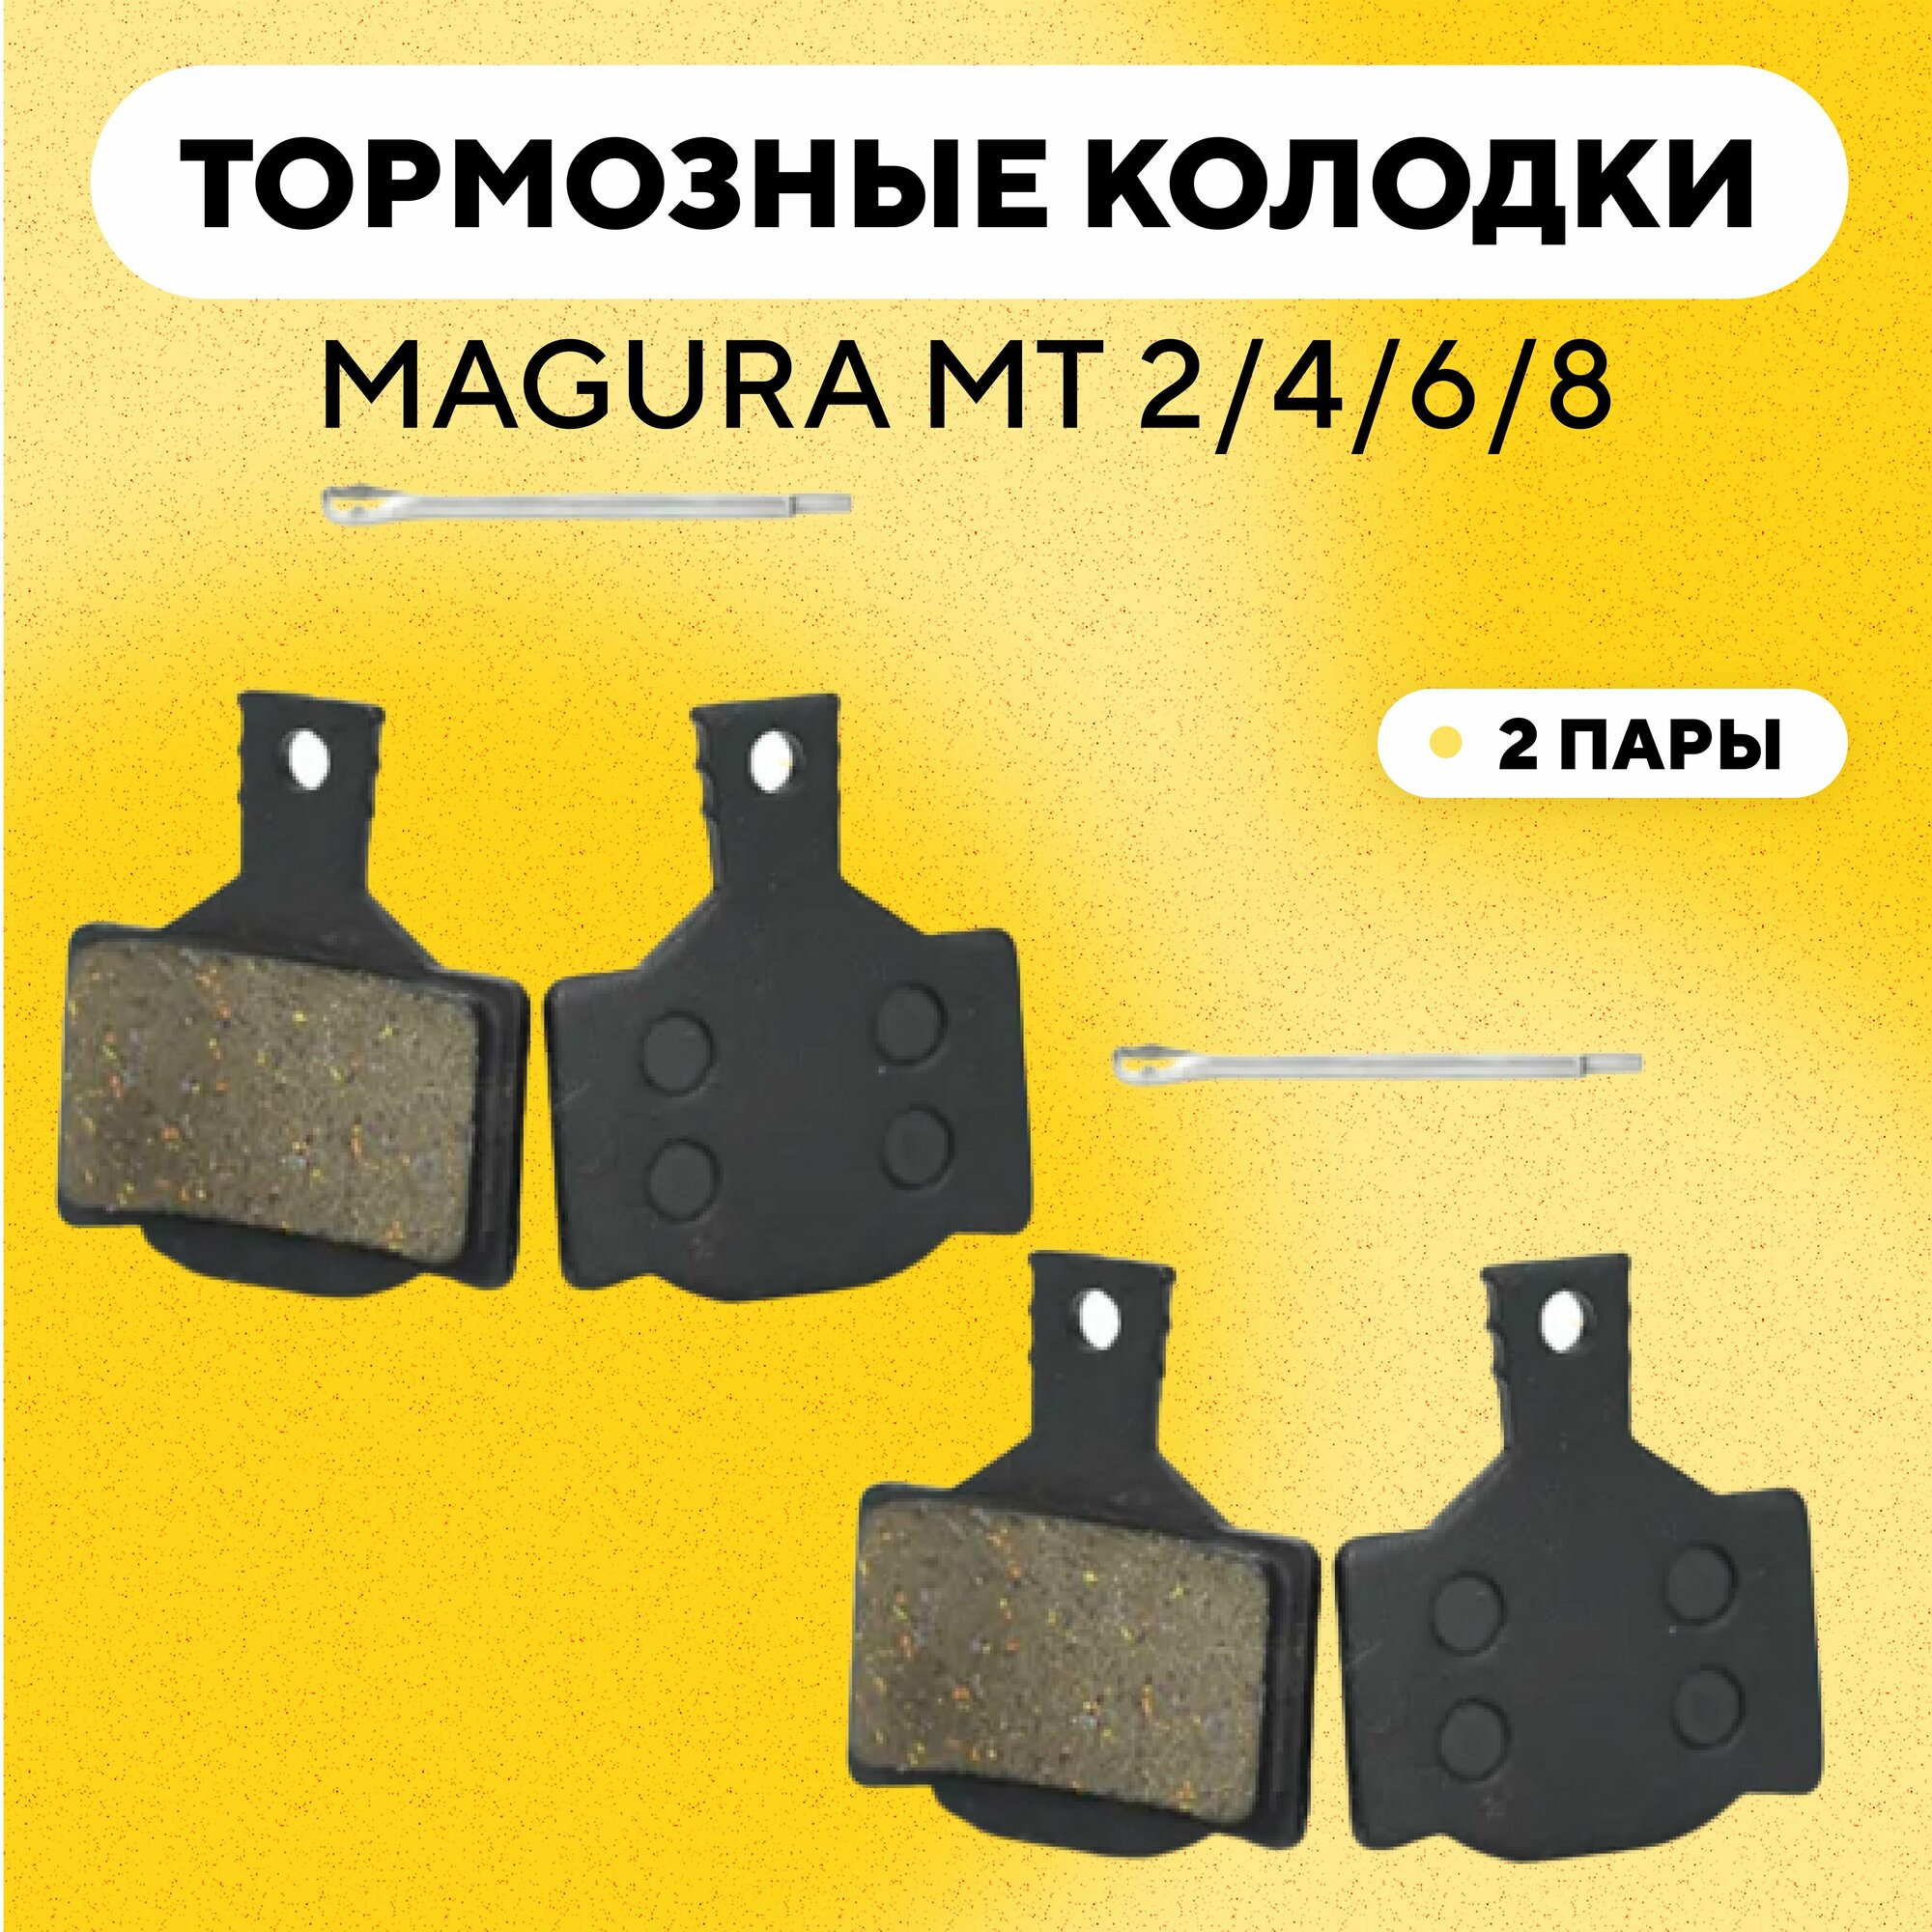 Тормозные колодки для тормозов Magura MT 2/4/6/8 электросамоката, велосипеда (G-009, комплект, 2 пары)